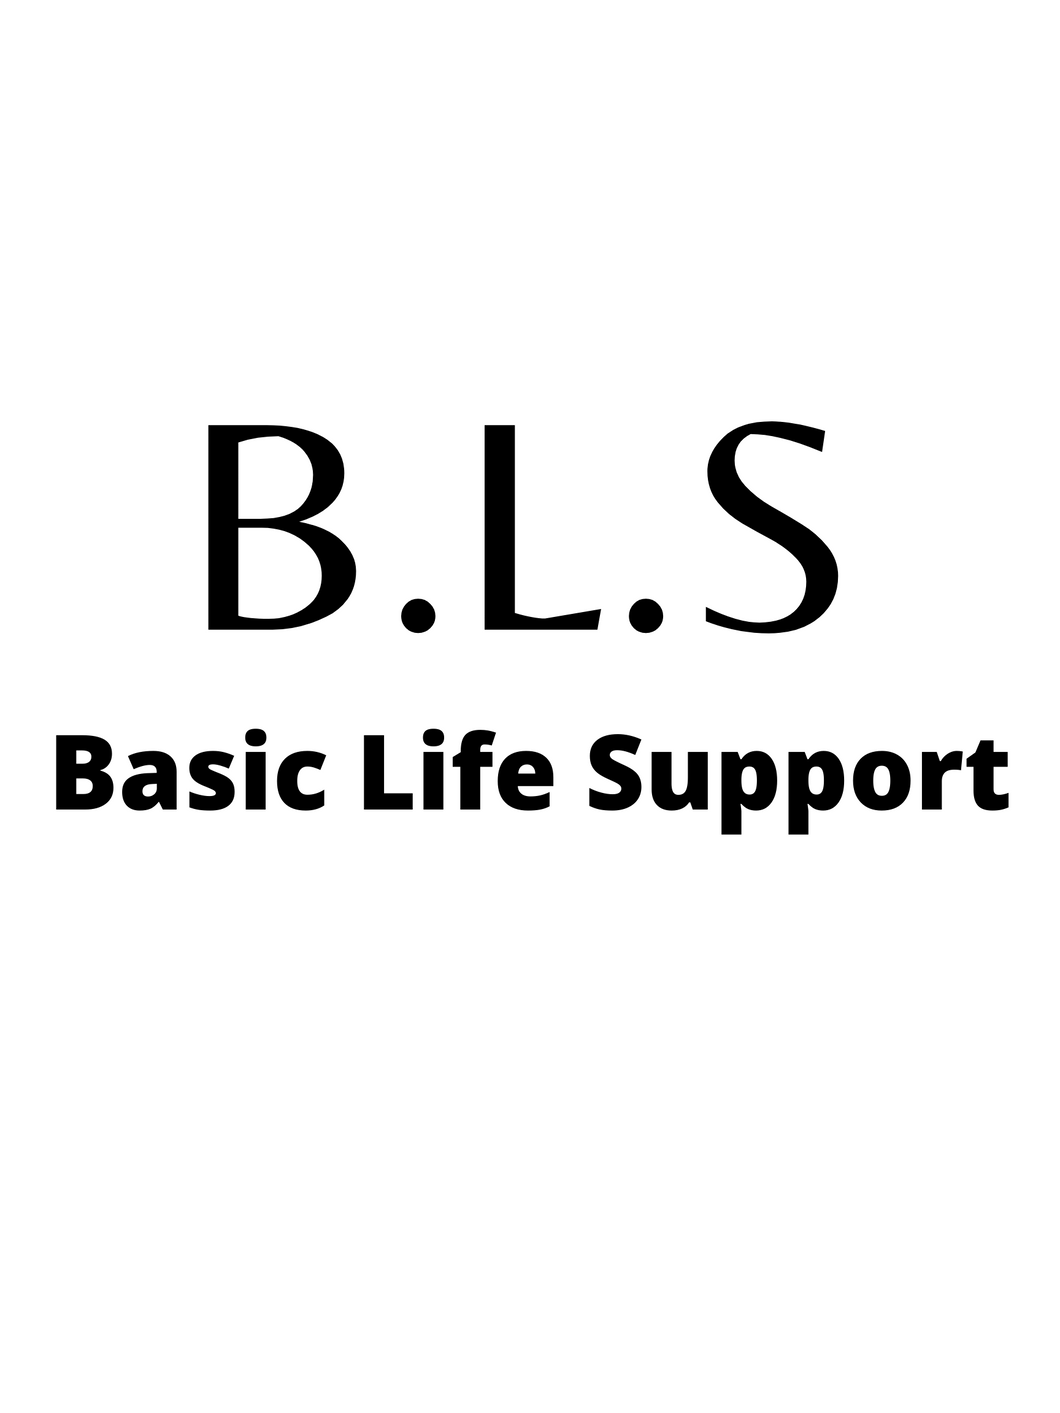 Basic Life Support Class (Recert)